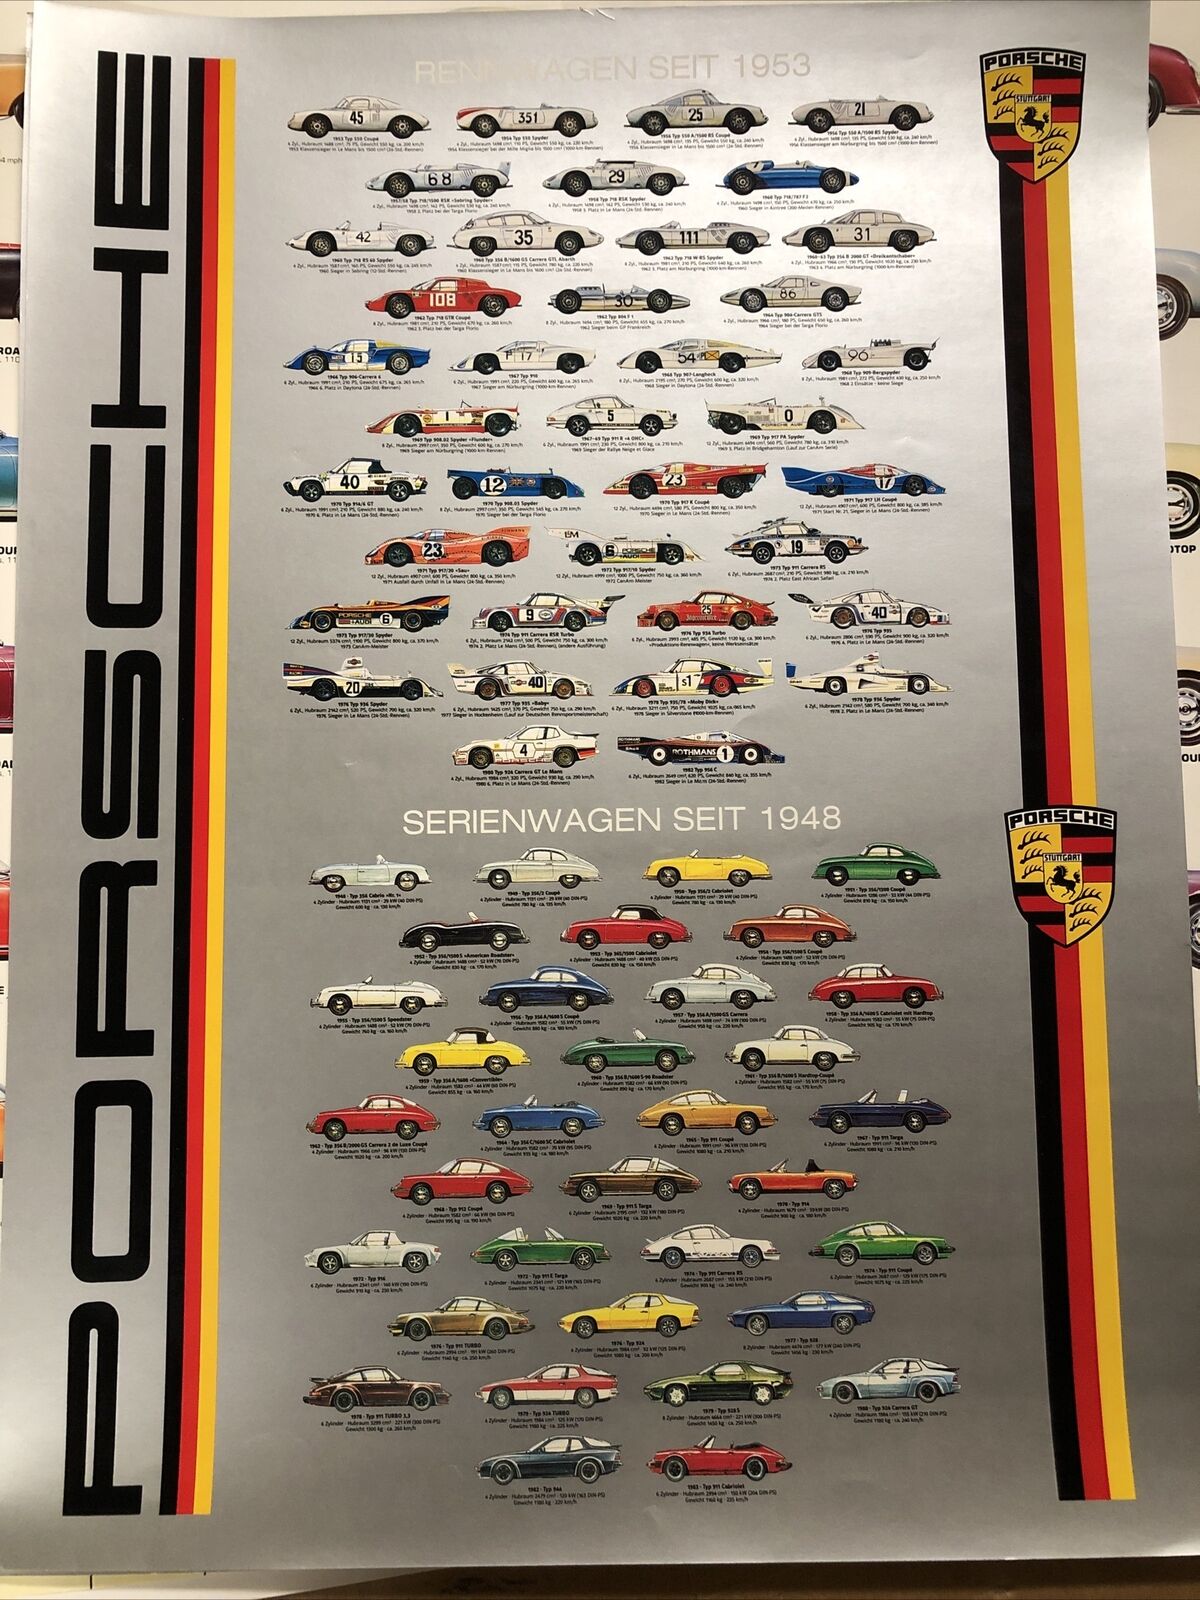 AWESOME Rare’ Porsche Poster Rennwagen Seit 1953